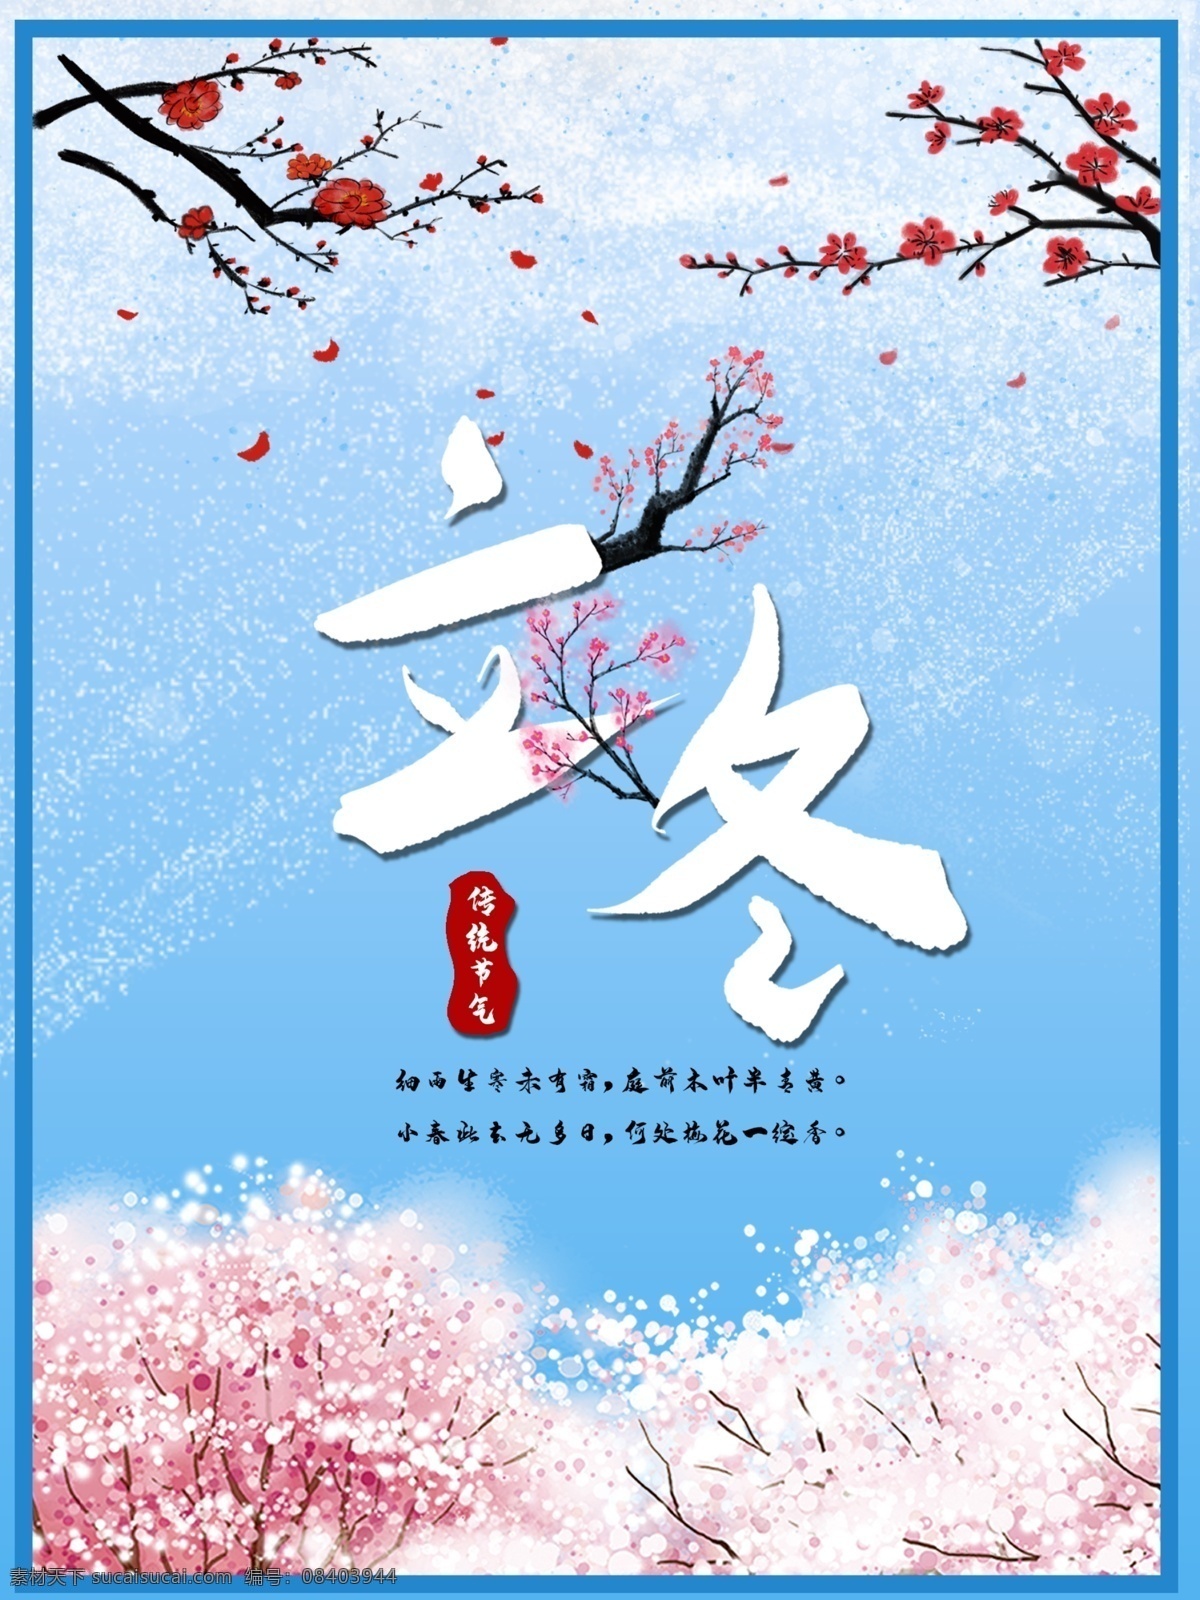 立冬 中国 传统 节气 传统节日 二十四节气 海报 节日 节日海报